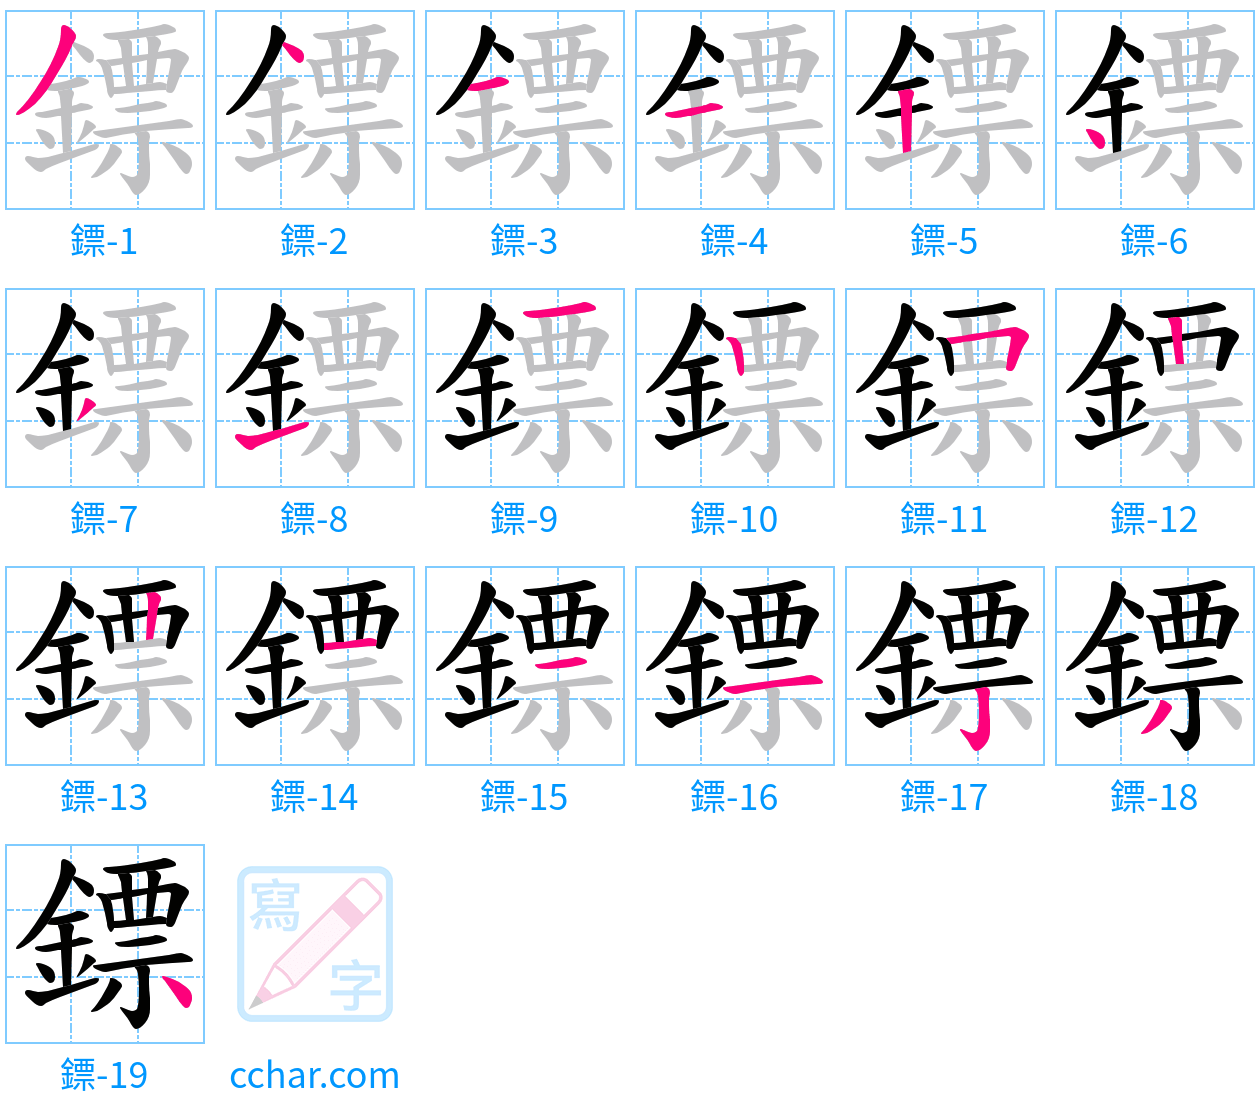 鏢 stroke order step-by-step diagram